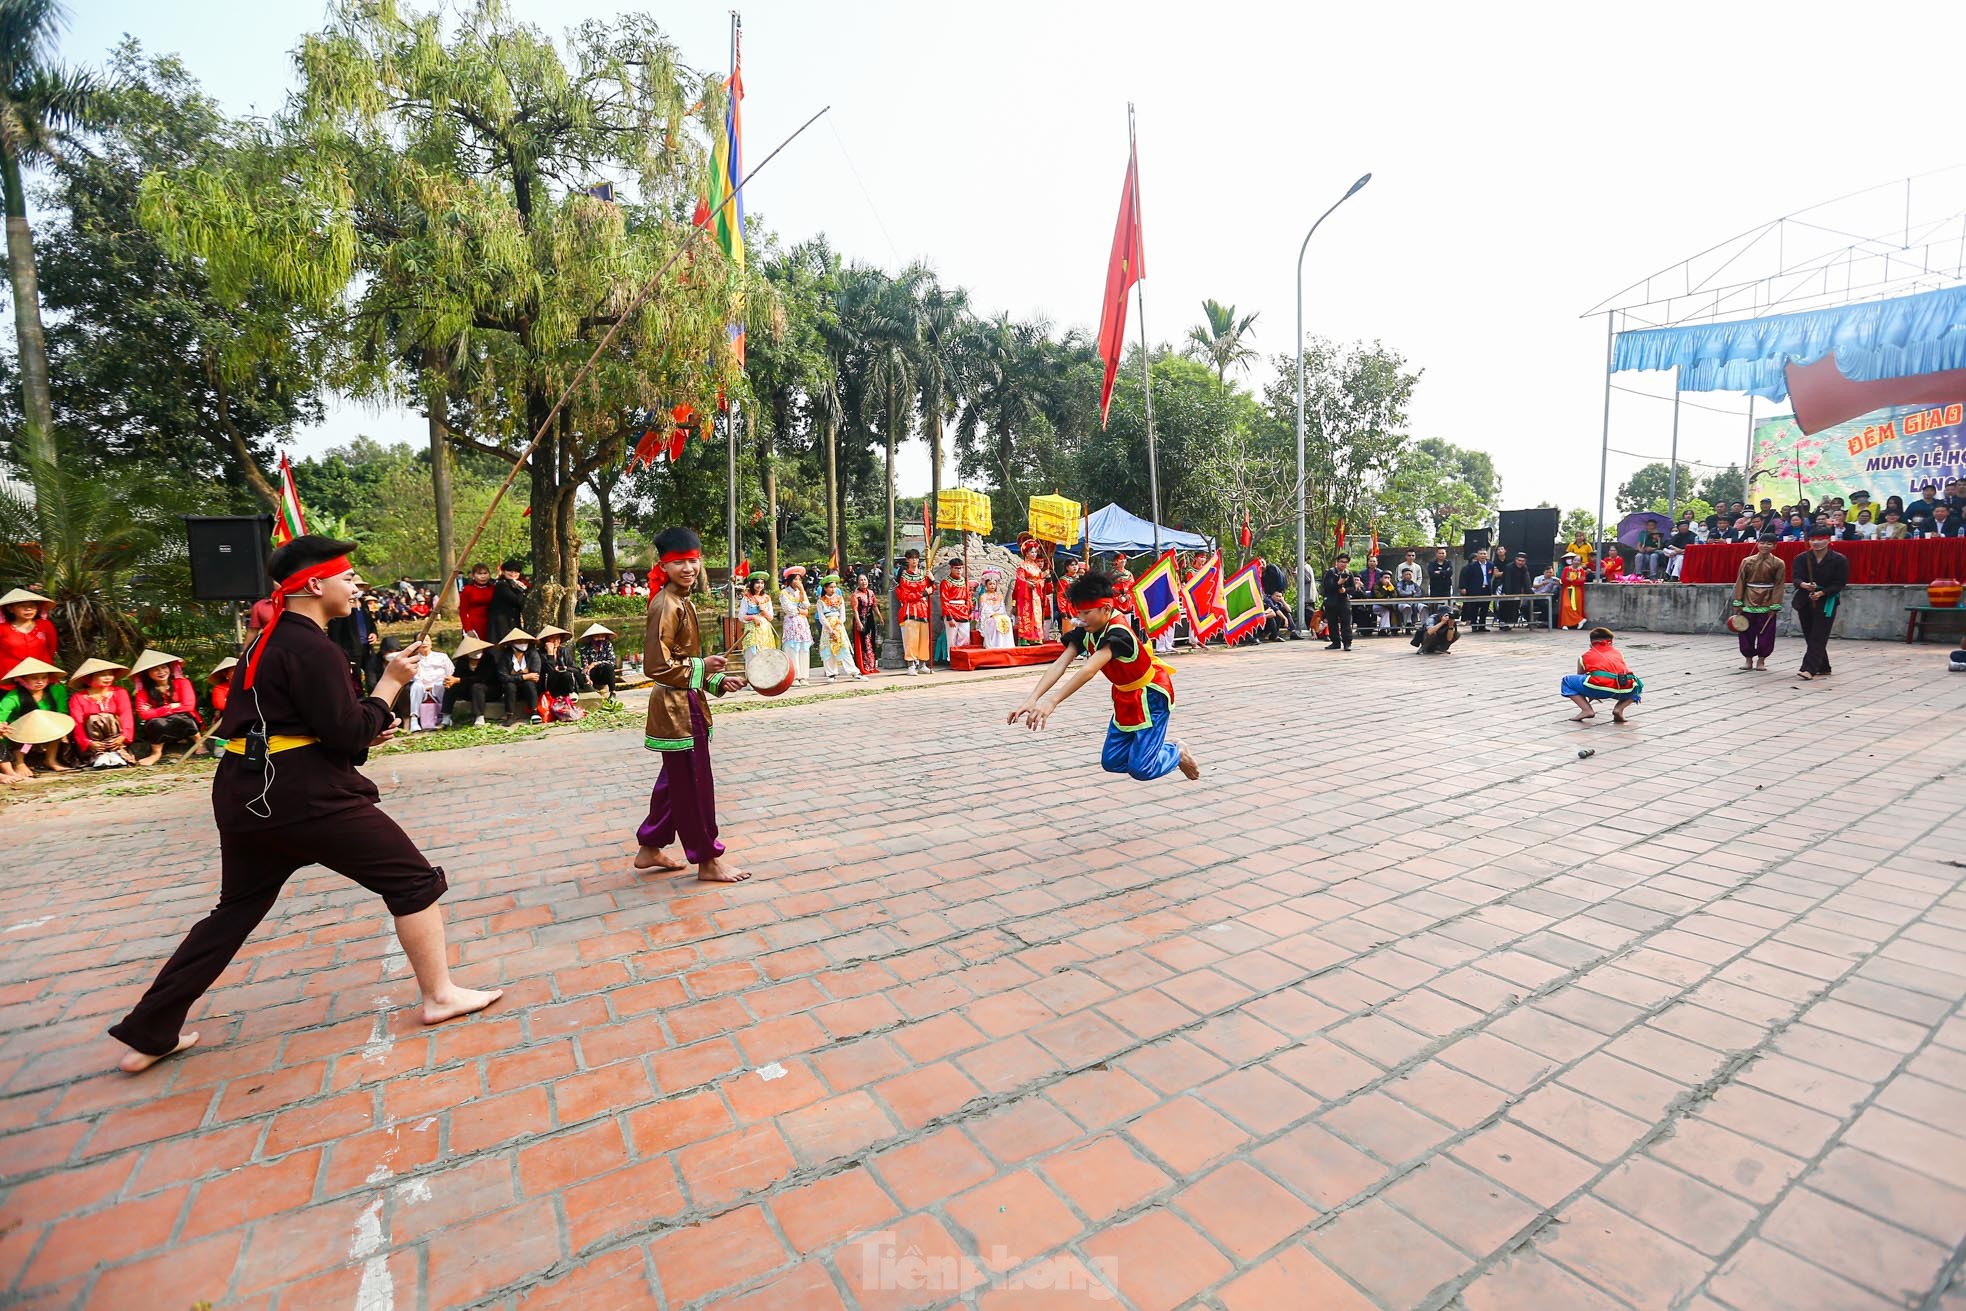 Xem nam nhân thi nhau trổ tài để kén rể tại lễ hội ở Hà Nội ảnh 13